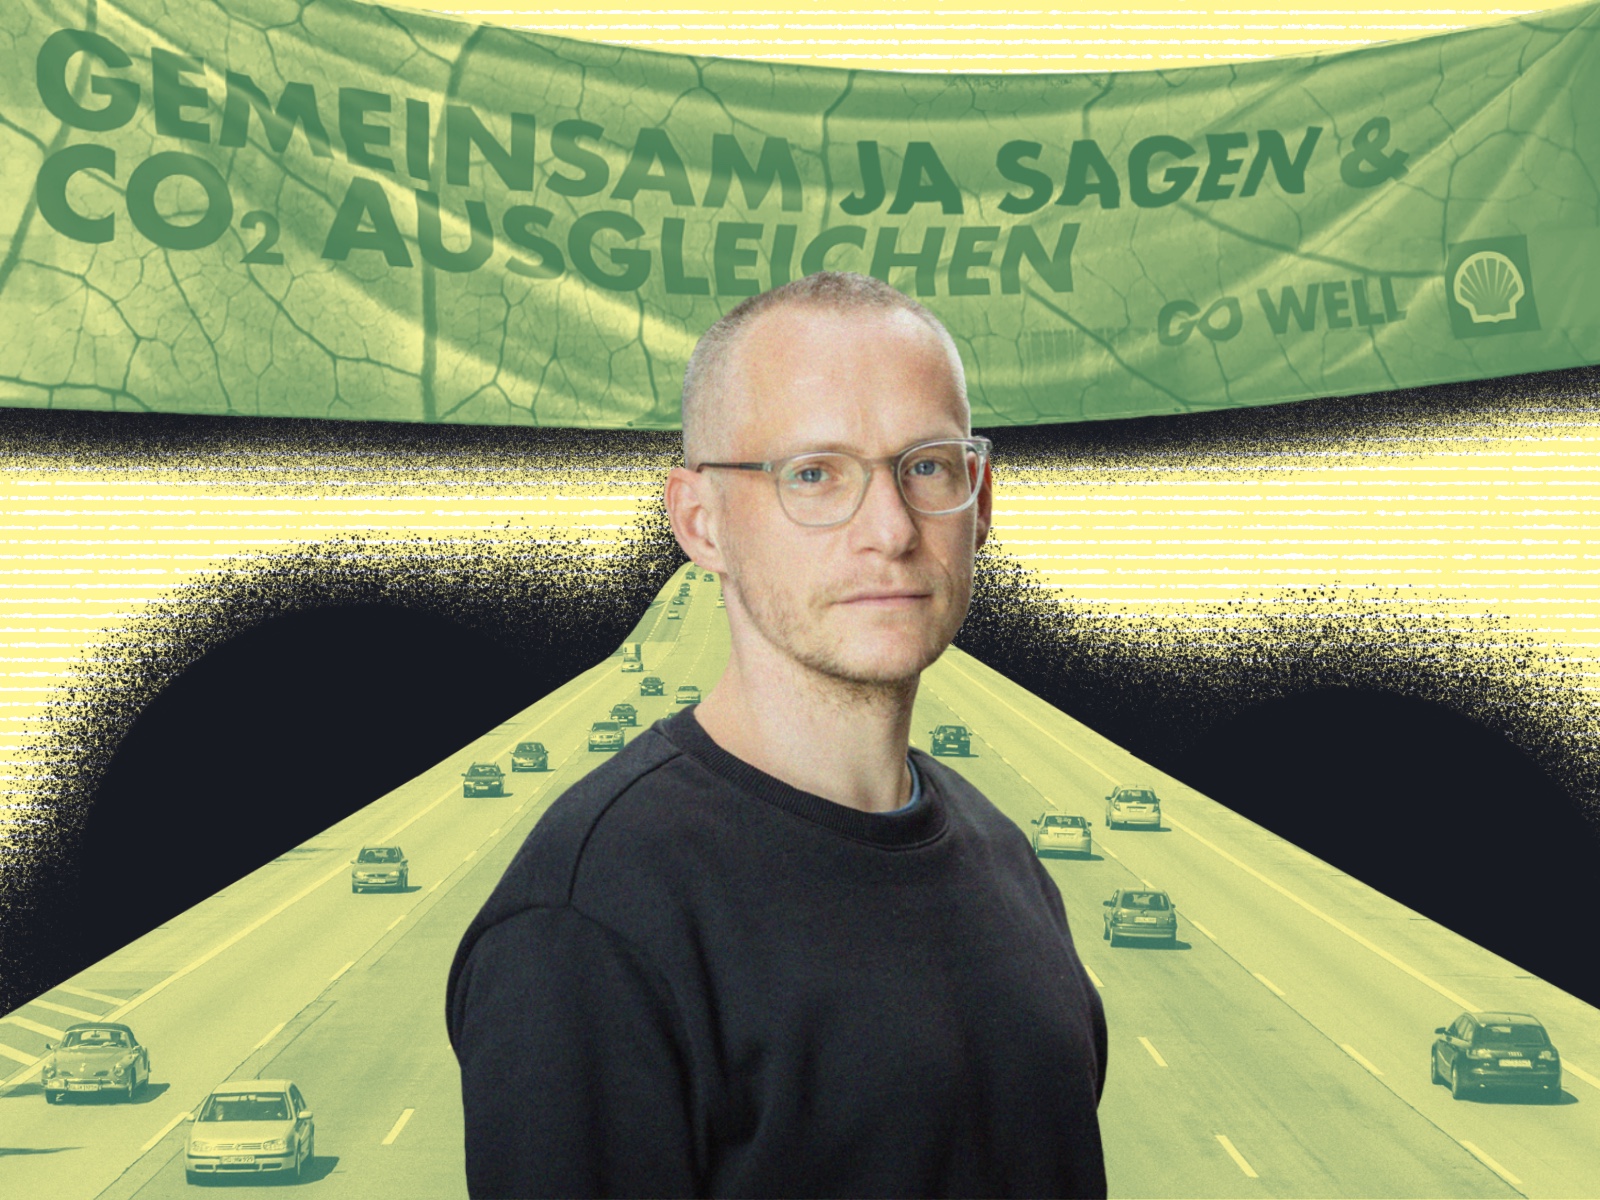 Clemens Kaupa vor dem Werbeschild vo Shell. Hinter ihm eine Autobahn.